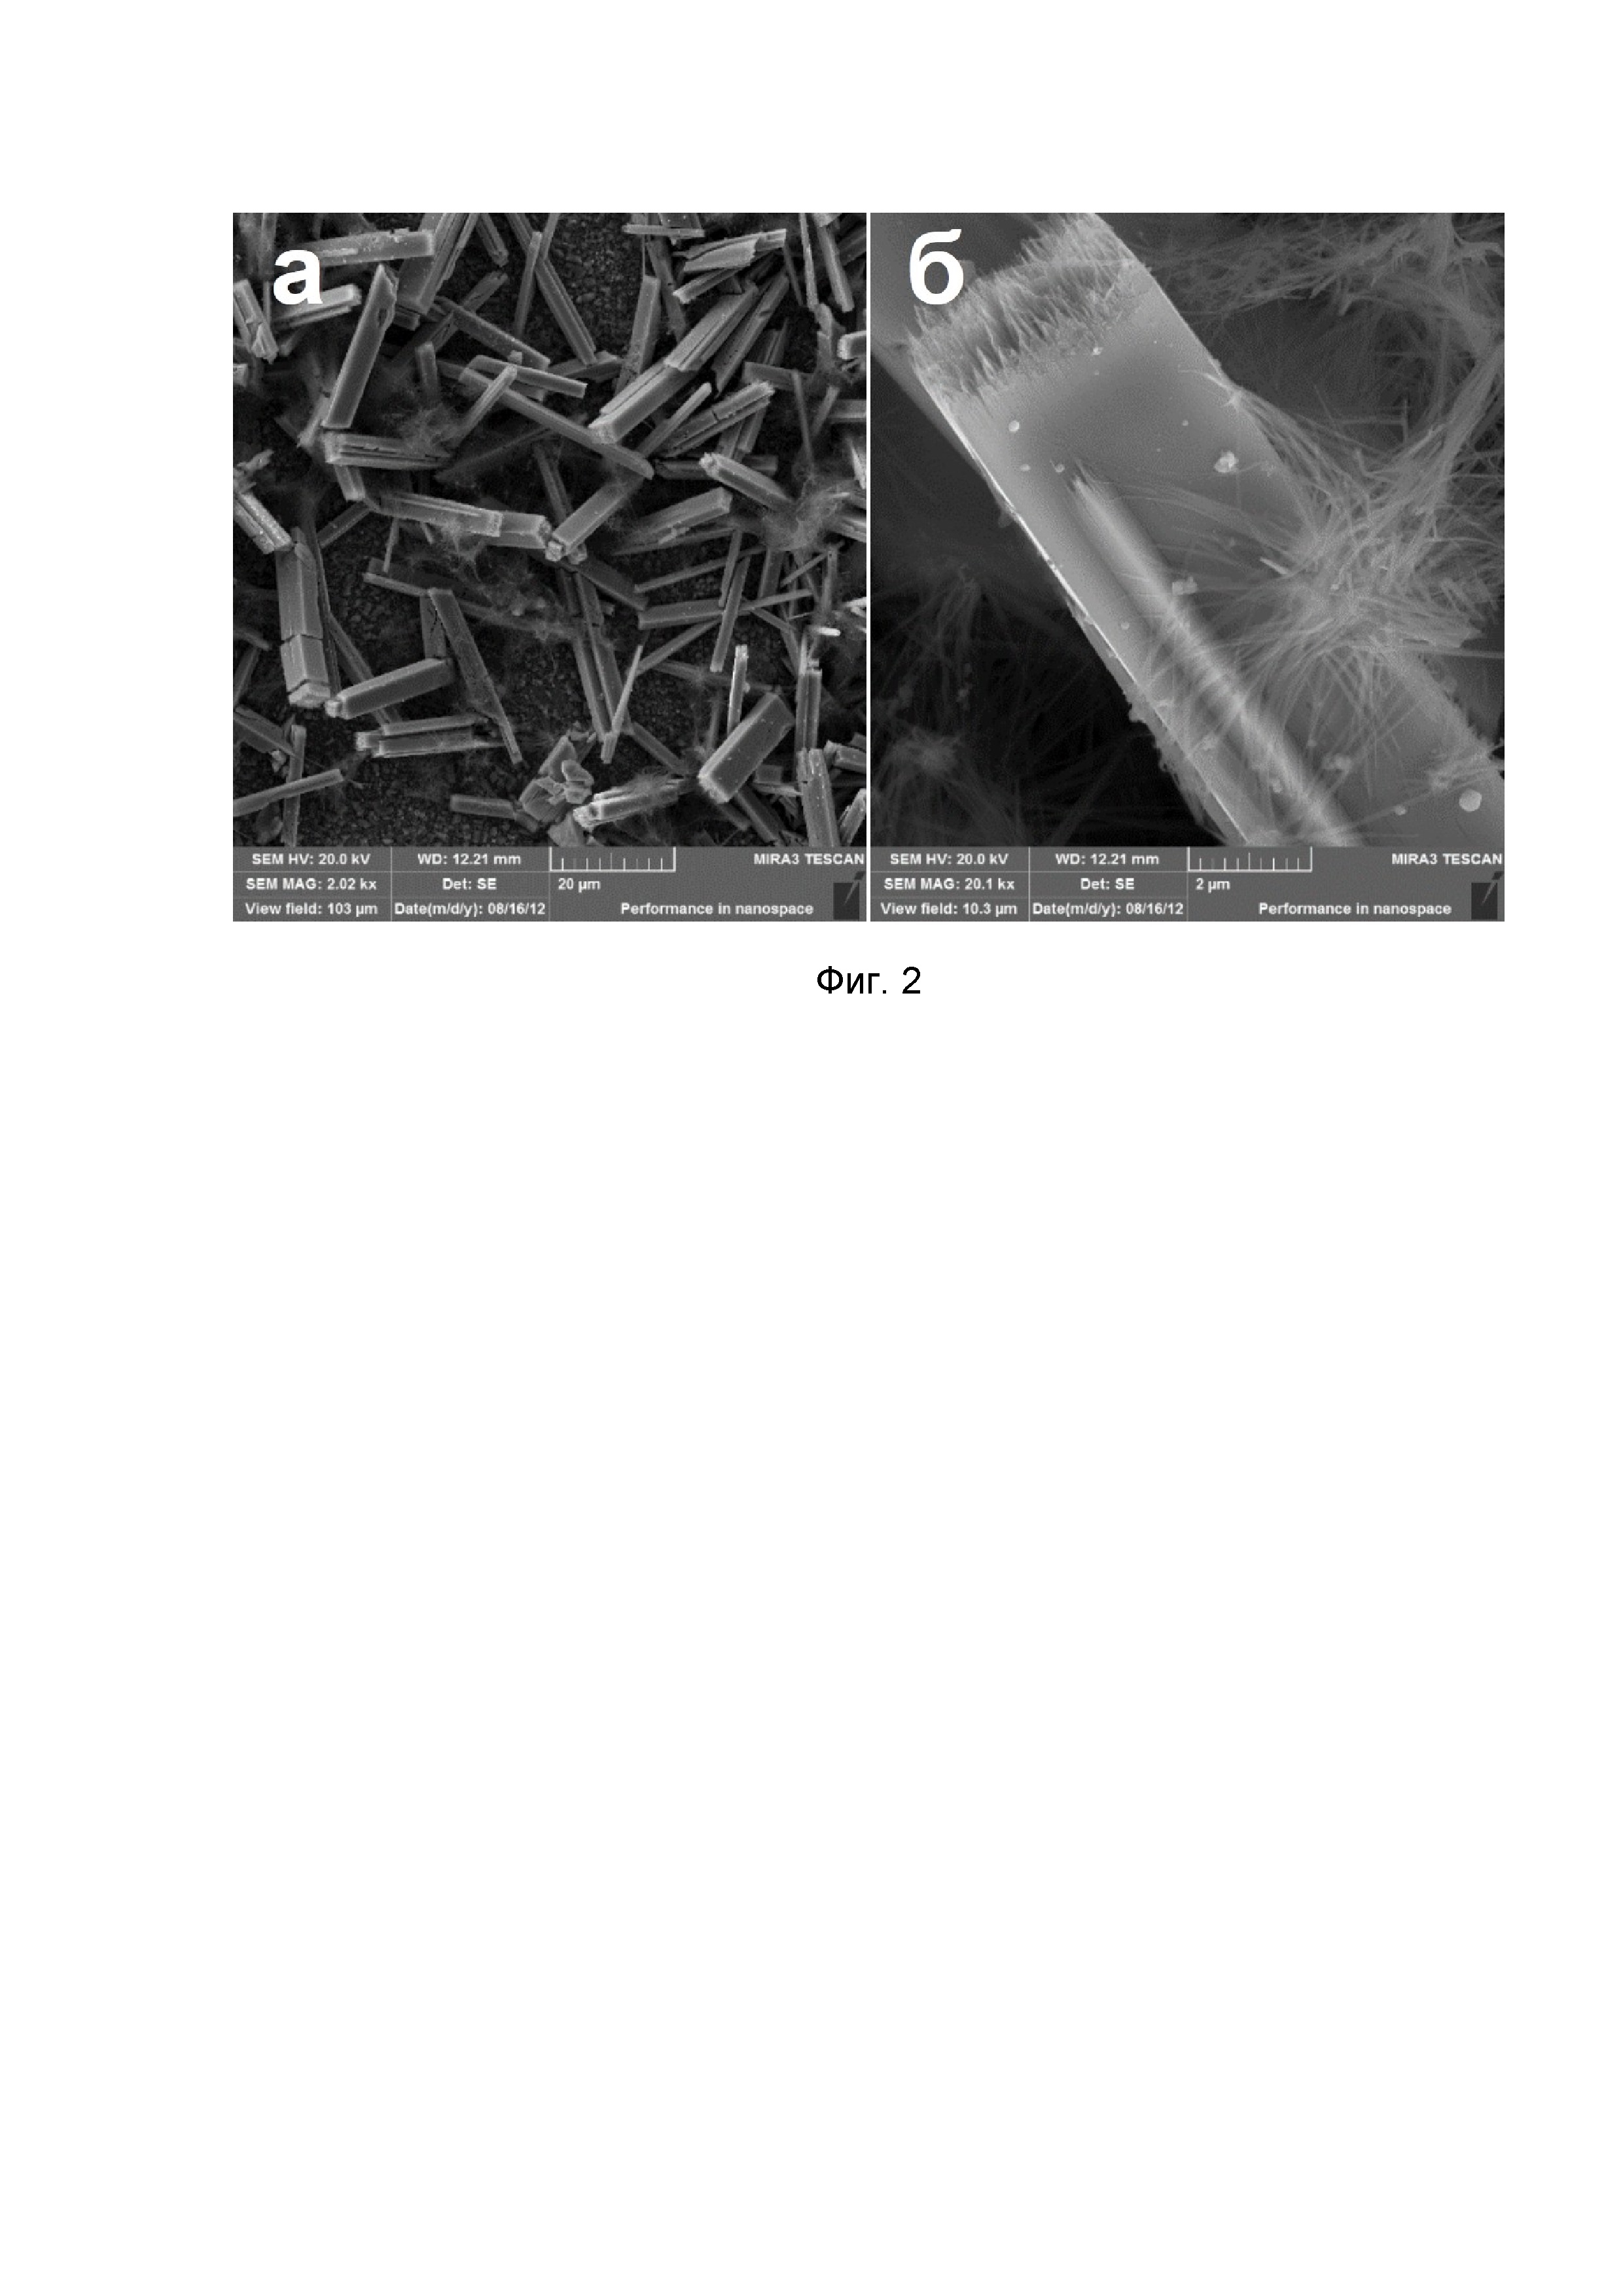 Электрохимический способ формирования кристаллов оксидных вольфрамовых бронз из нановискеров (варианты)